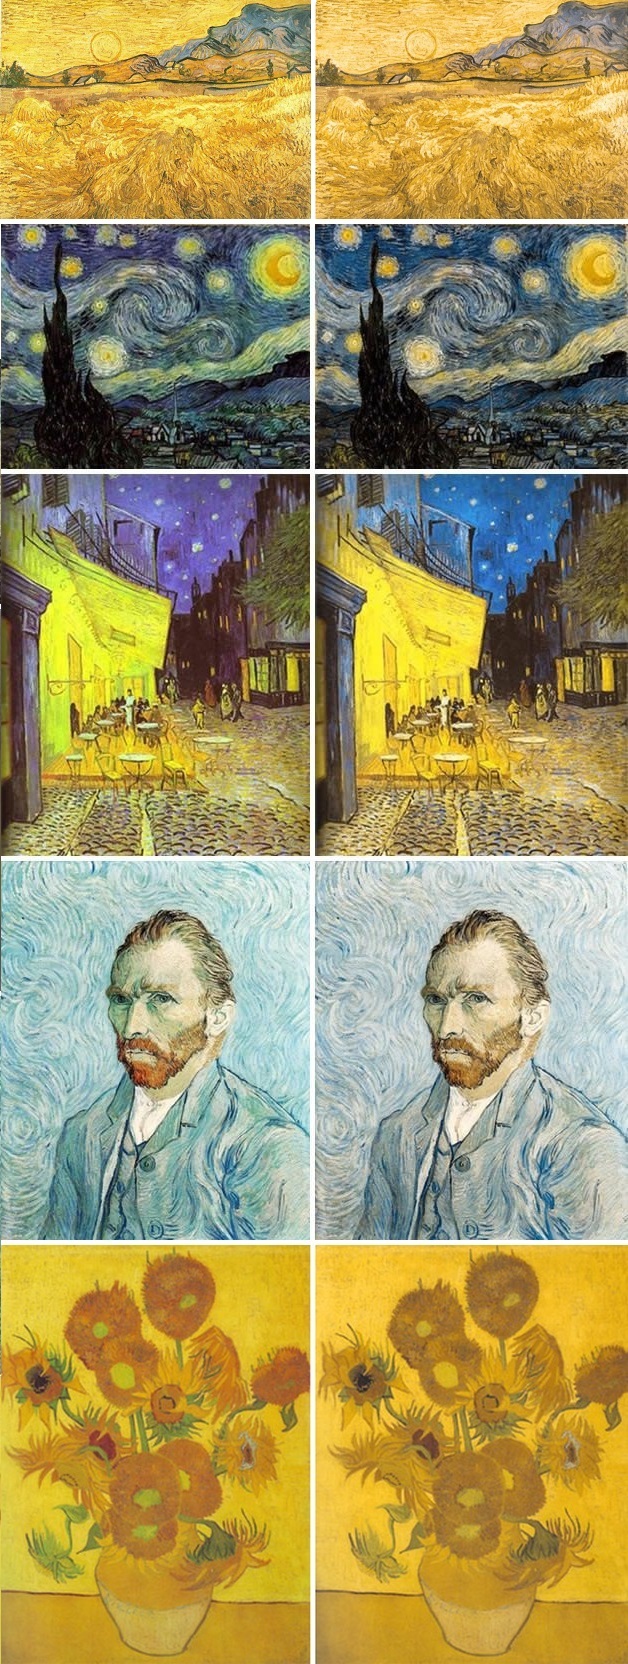 Van Gogh paintings color blind test